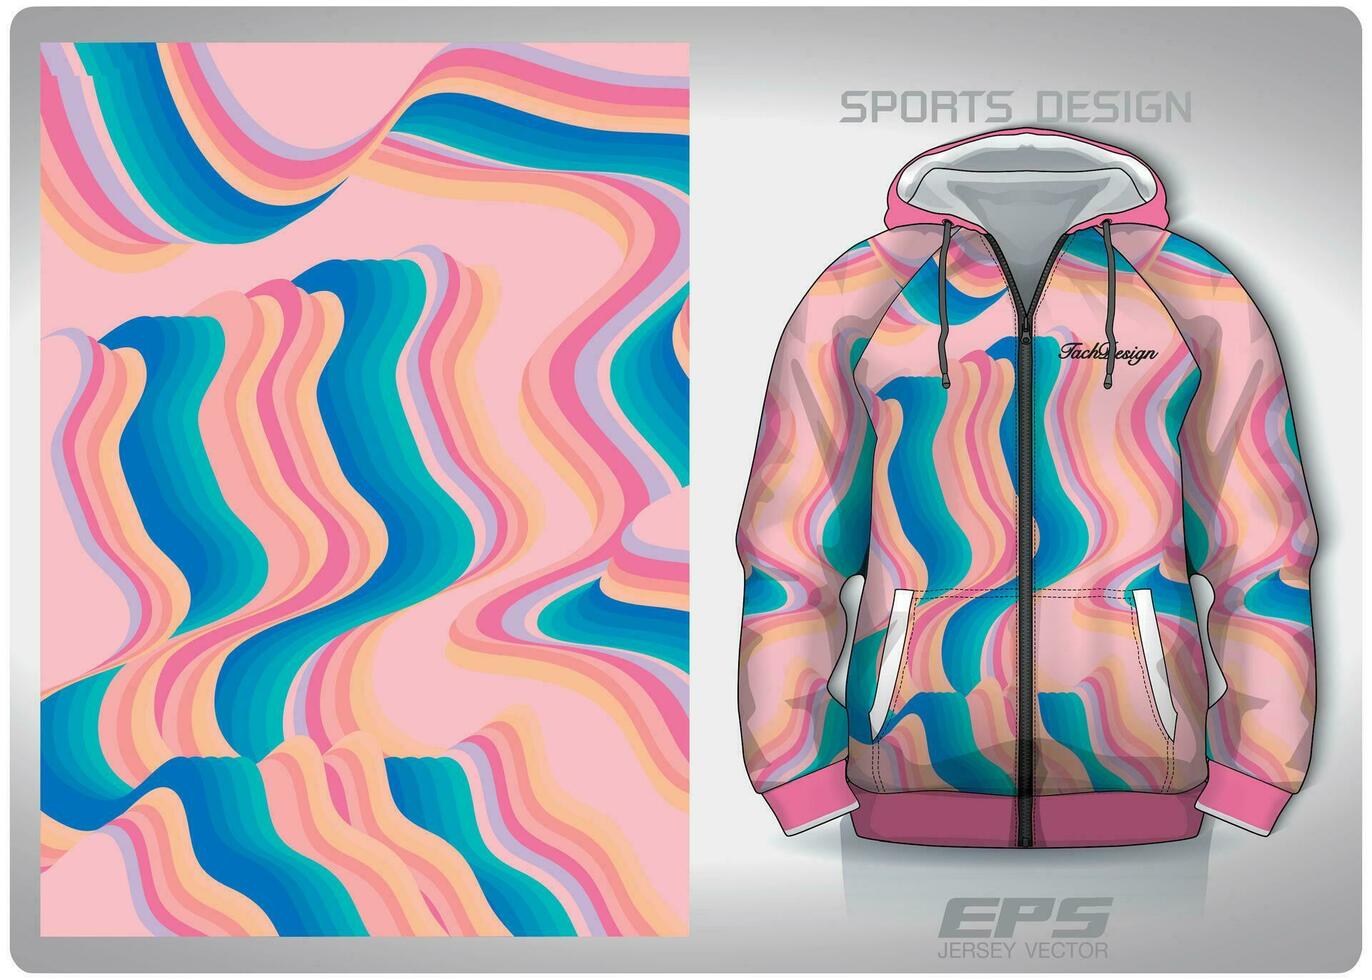 vektor sporter skjorta bakgrund image.rainbow hav vågor mönster design, illustration, textil- bakgrund för sporter lång ärm luvtröja, jersey luvtröja